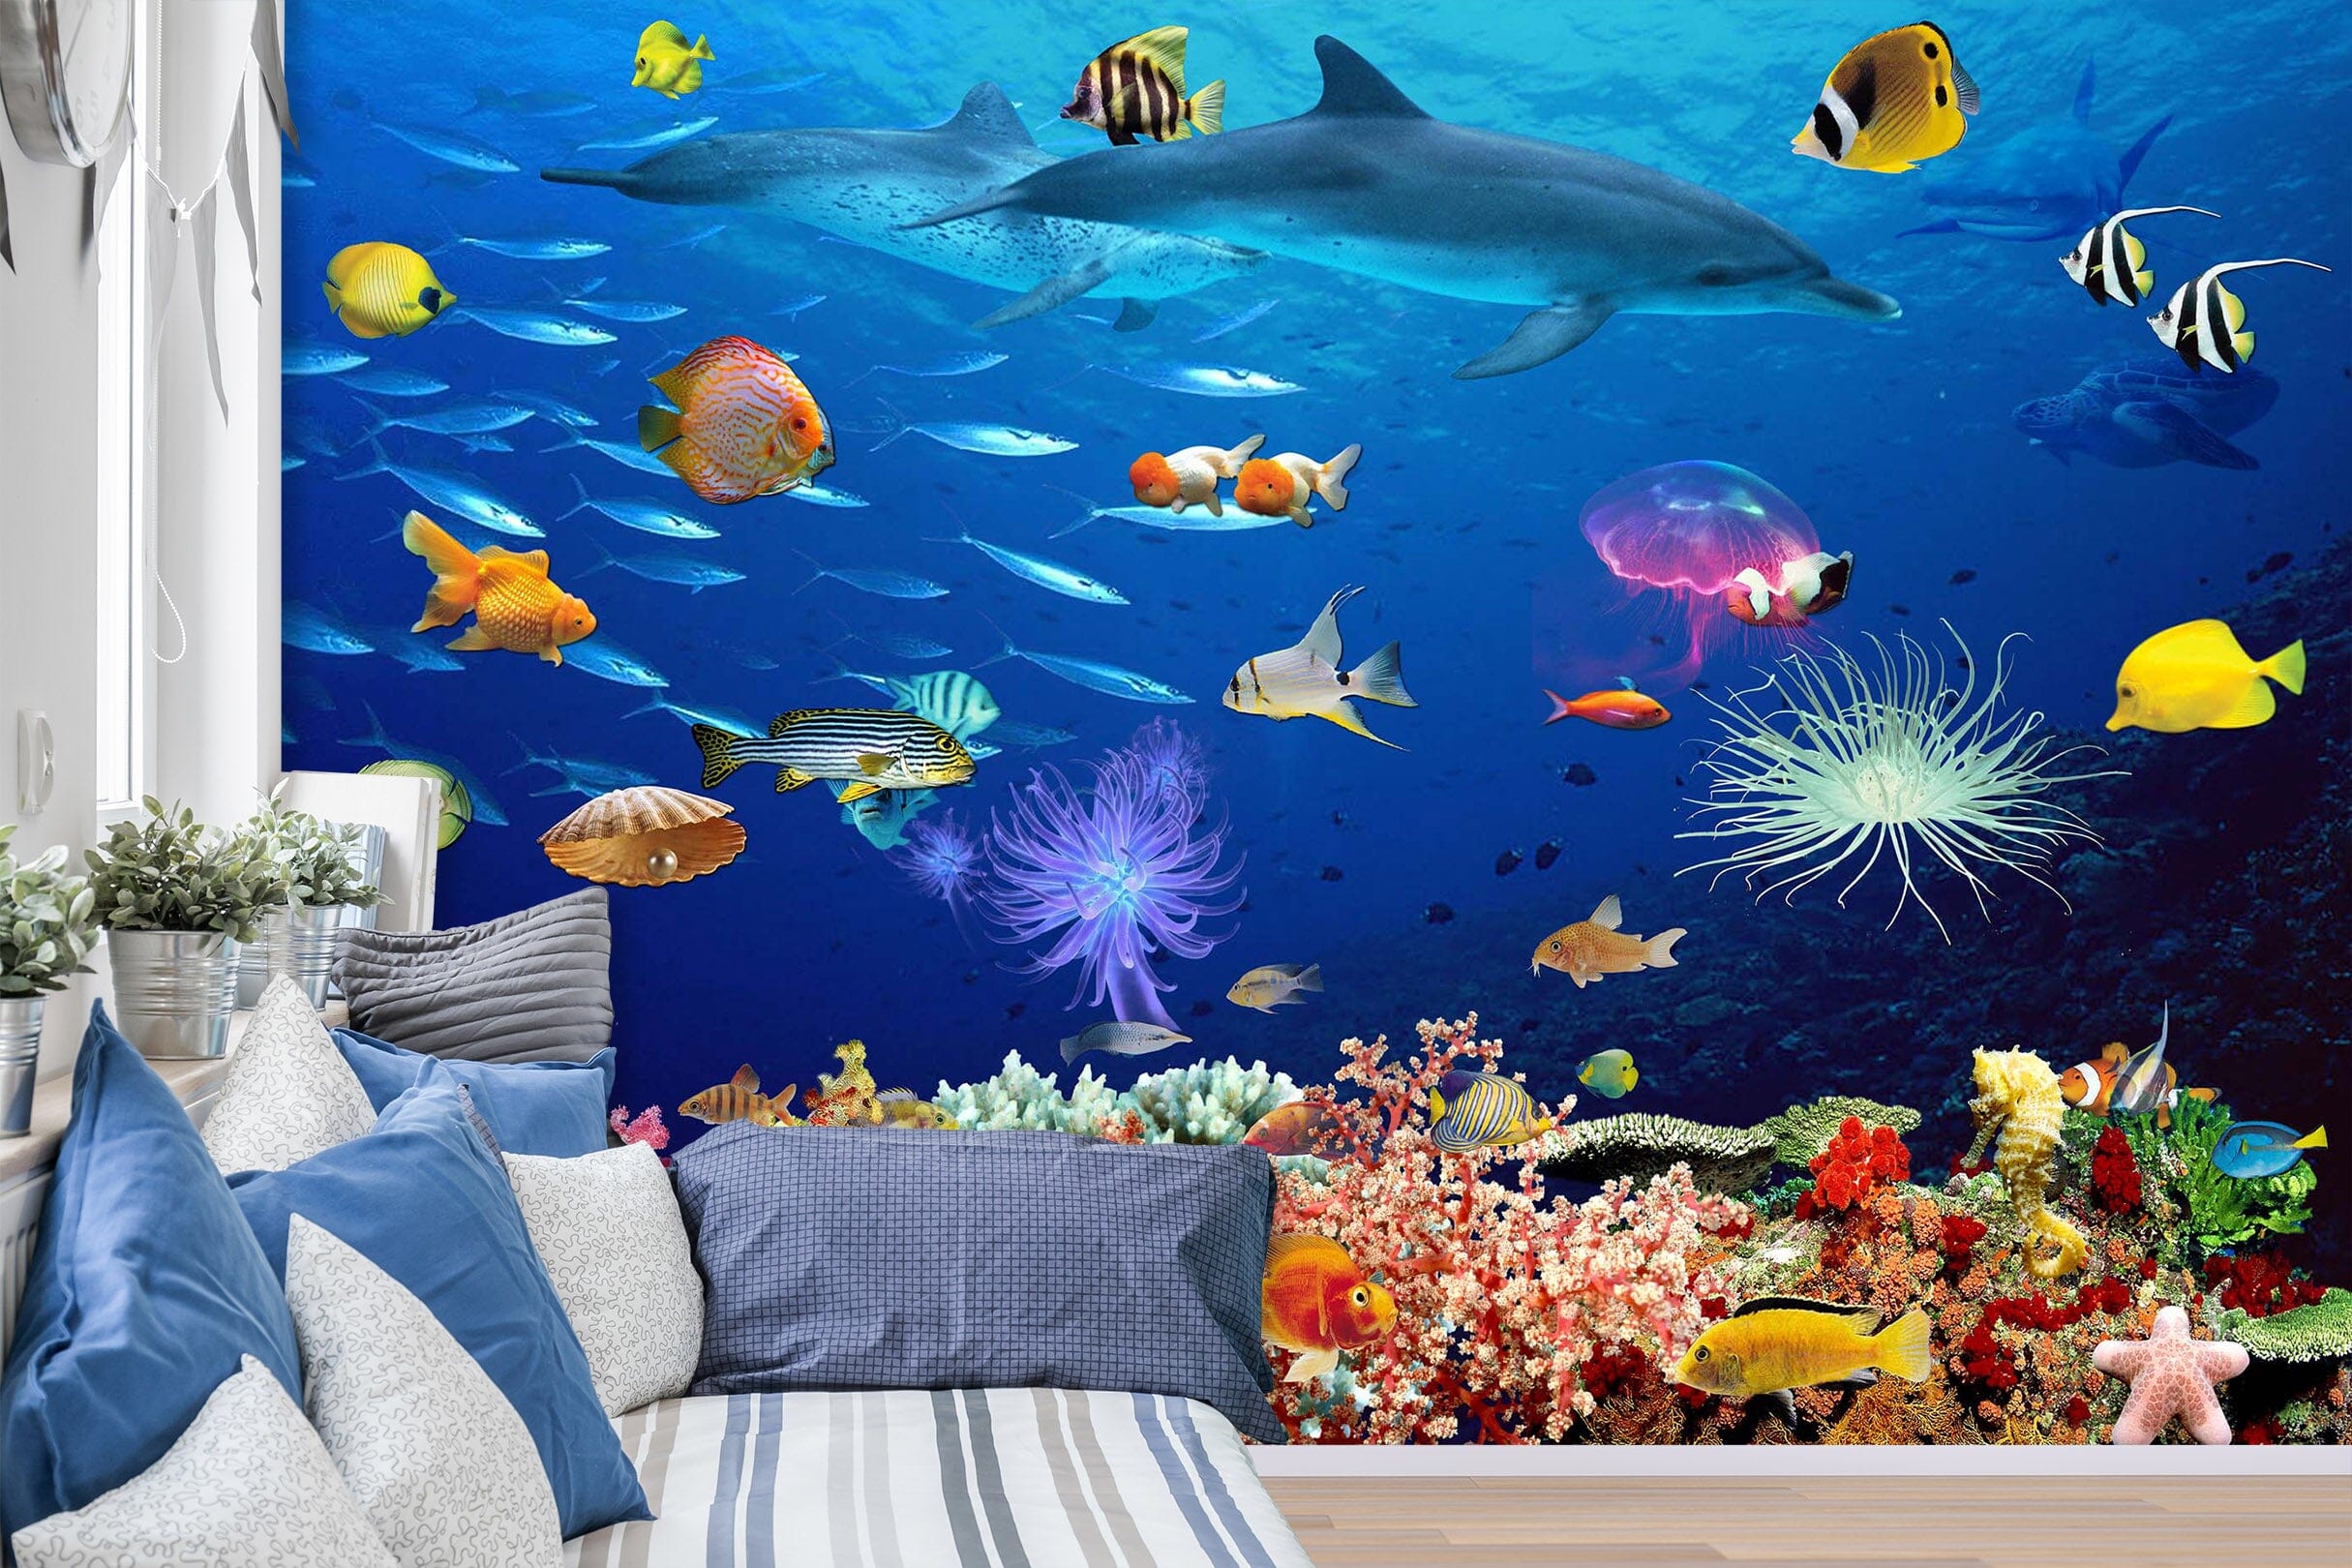 3D The Underwater World 1403 Wall Murals Wallpaper AJ Wallpaper 2 